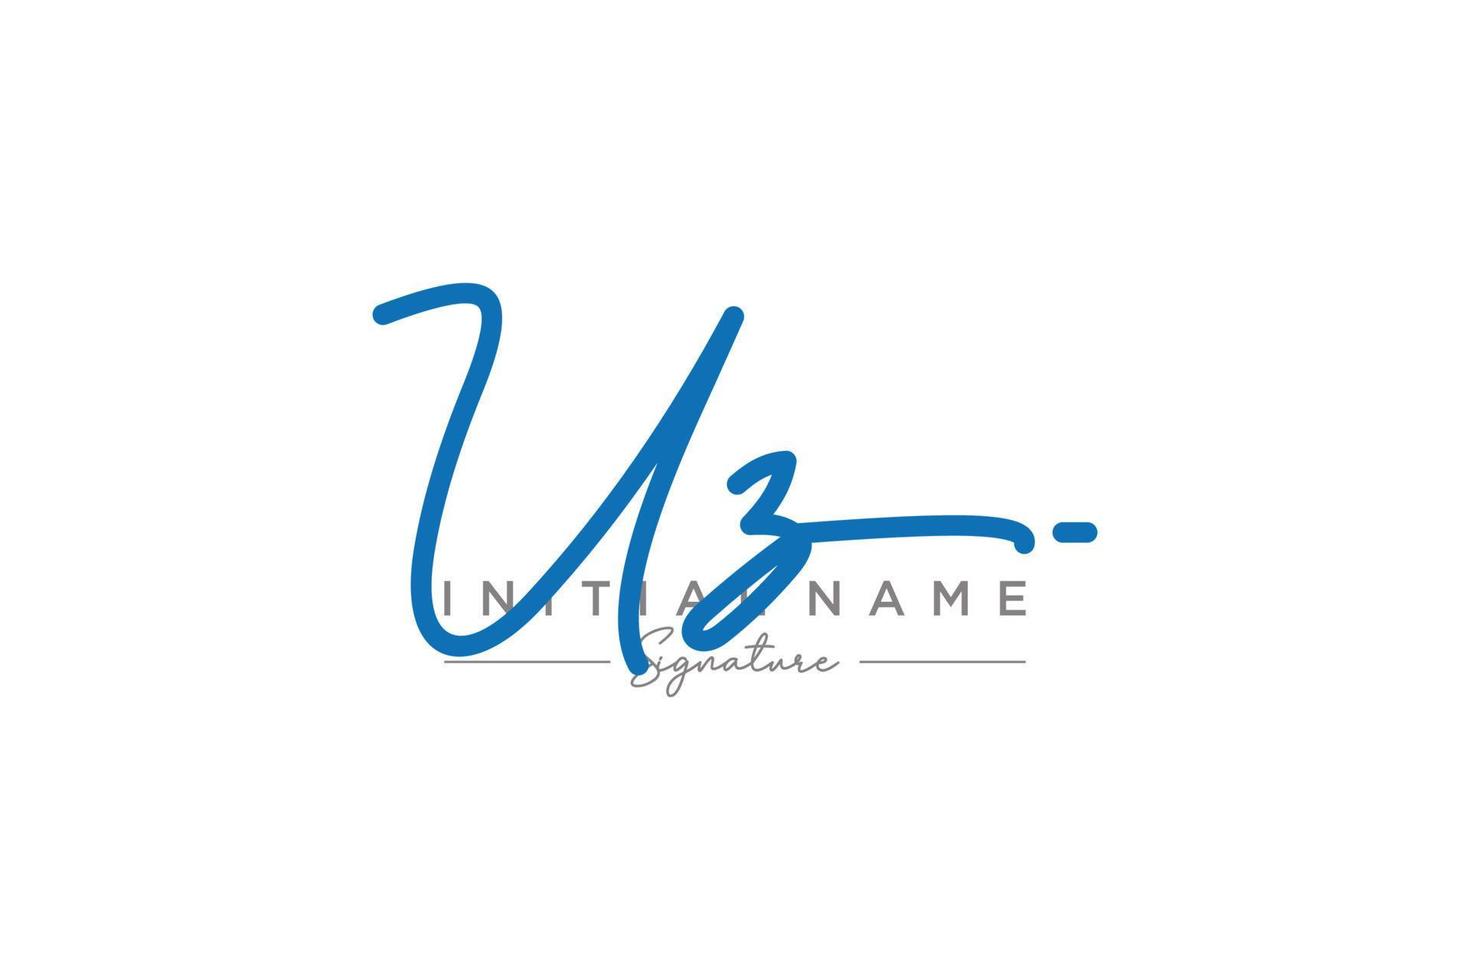 vetor inicial de modelo de logotipo de assinatura uz. ilustração vetorial de letras de caligrafia desenhada à mão.